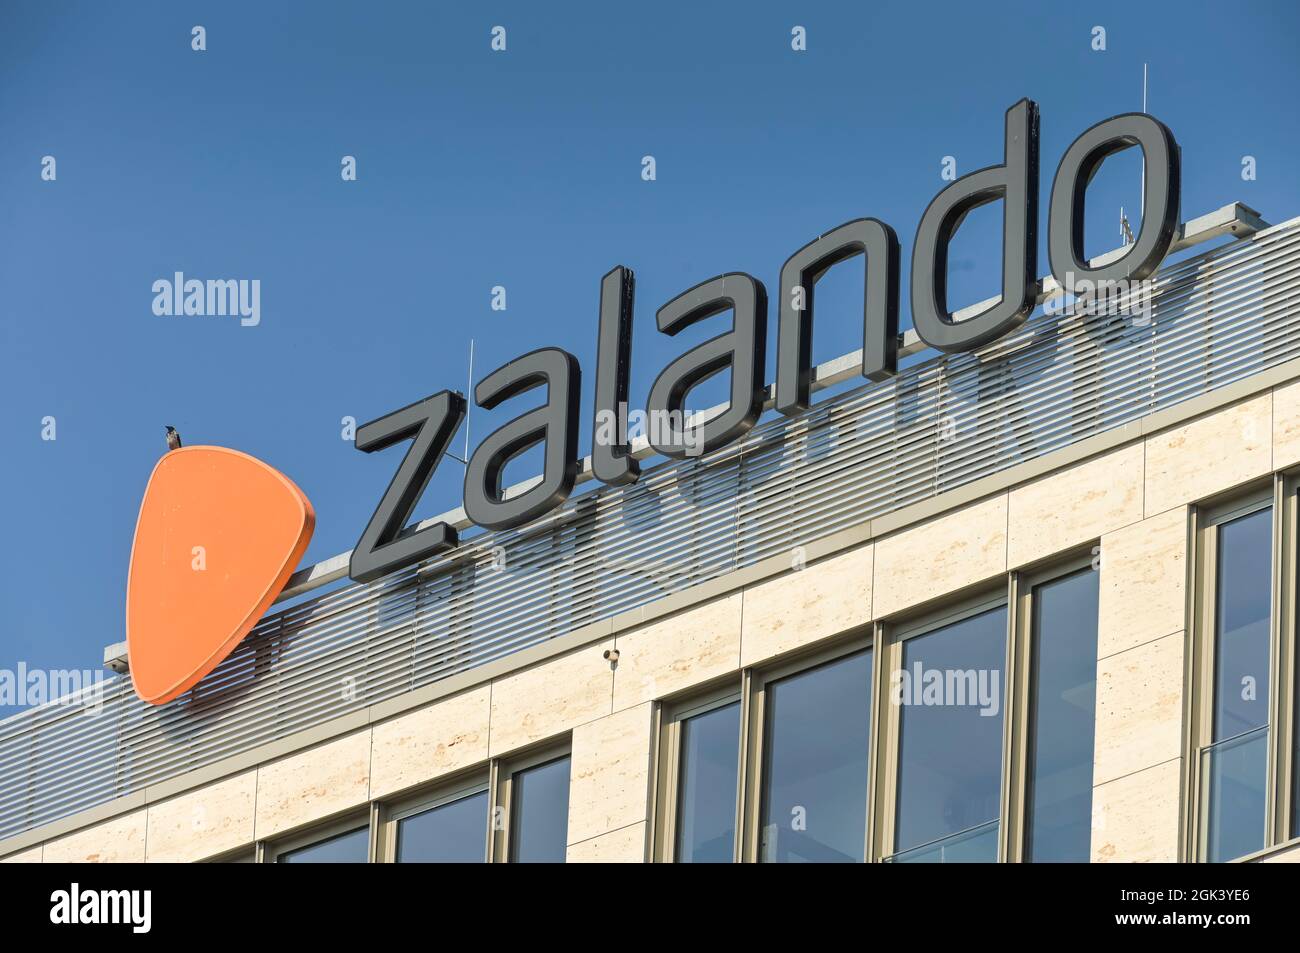 Zalando, Mühlenstraße, Friedrichshain, Berlin, Deutschland Stock Photo